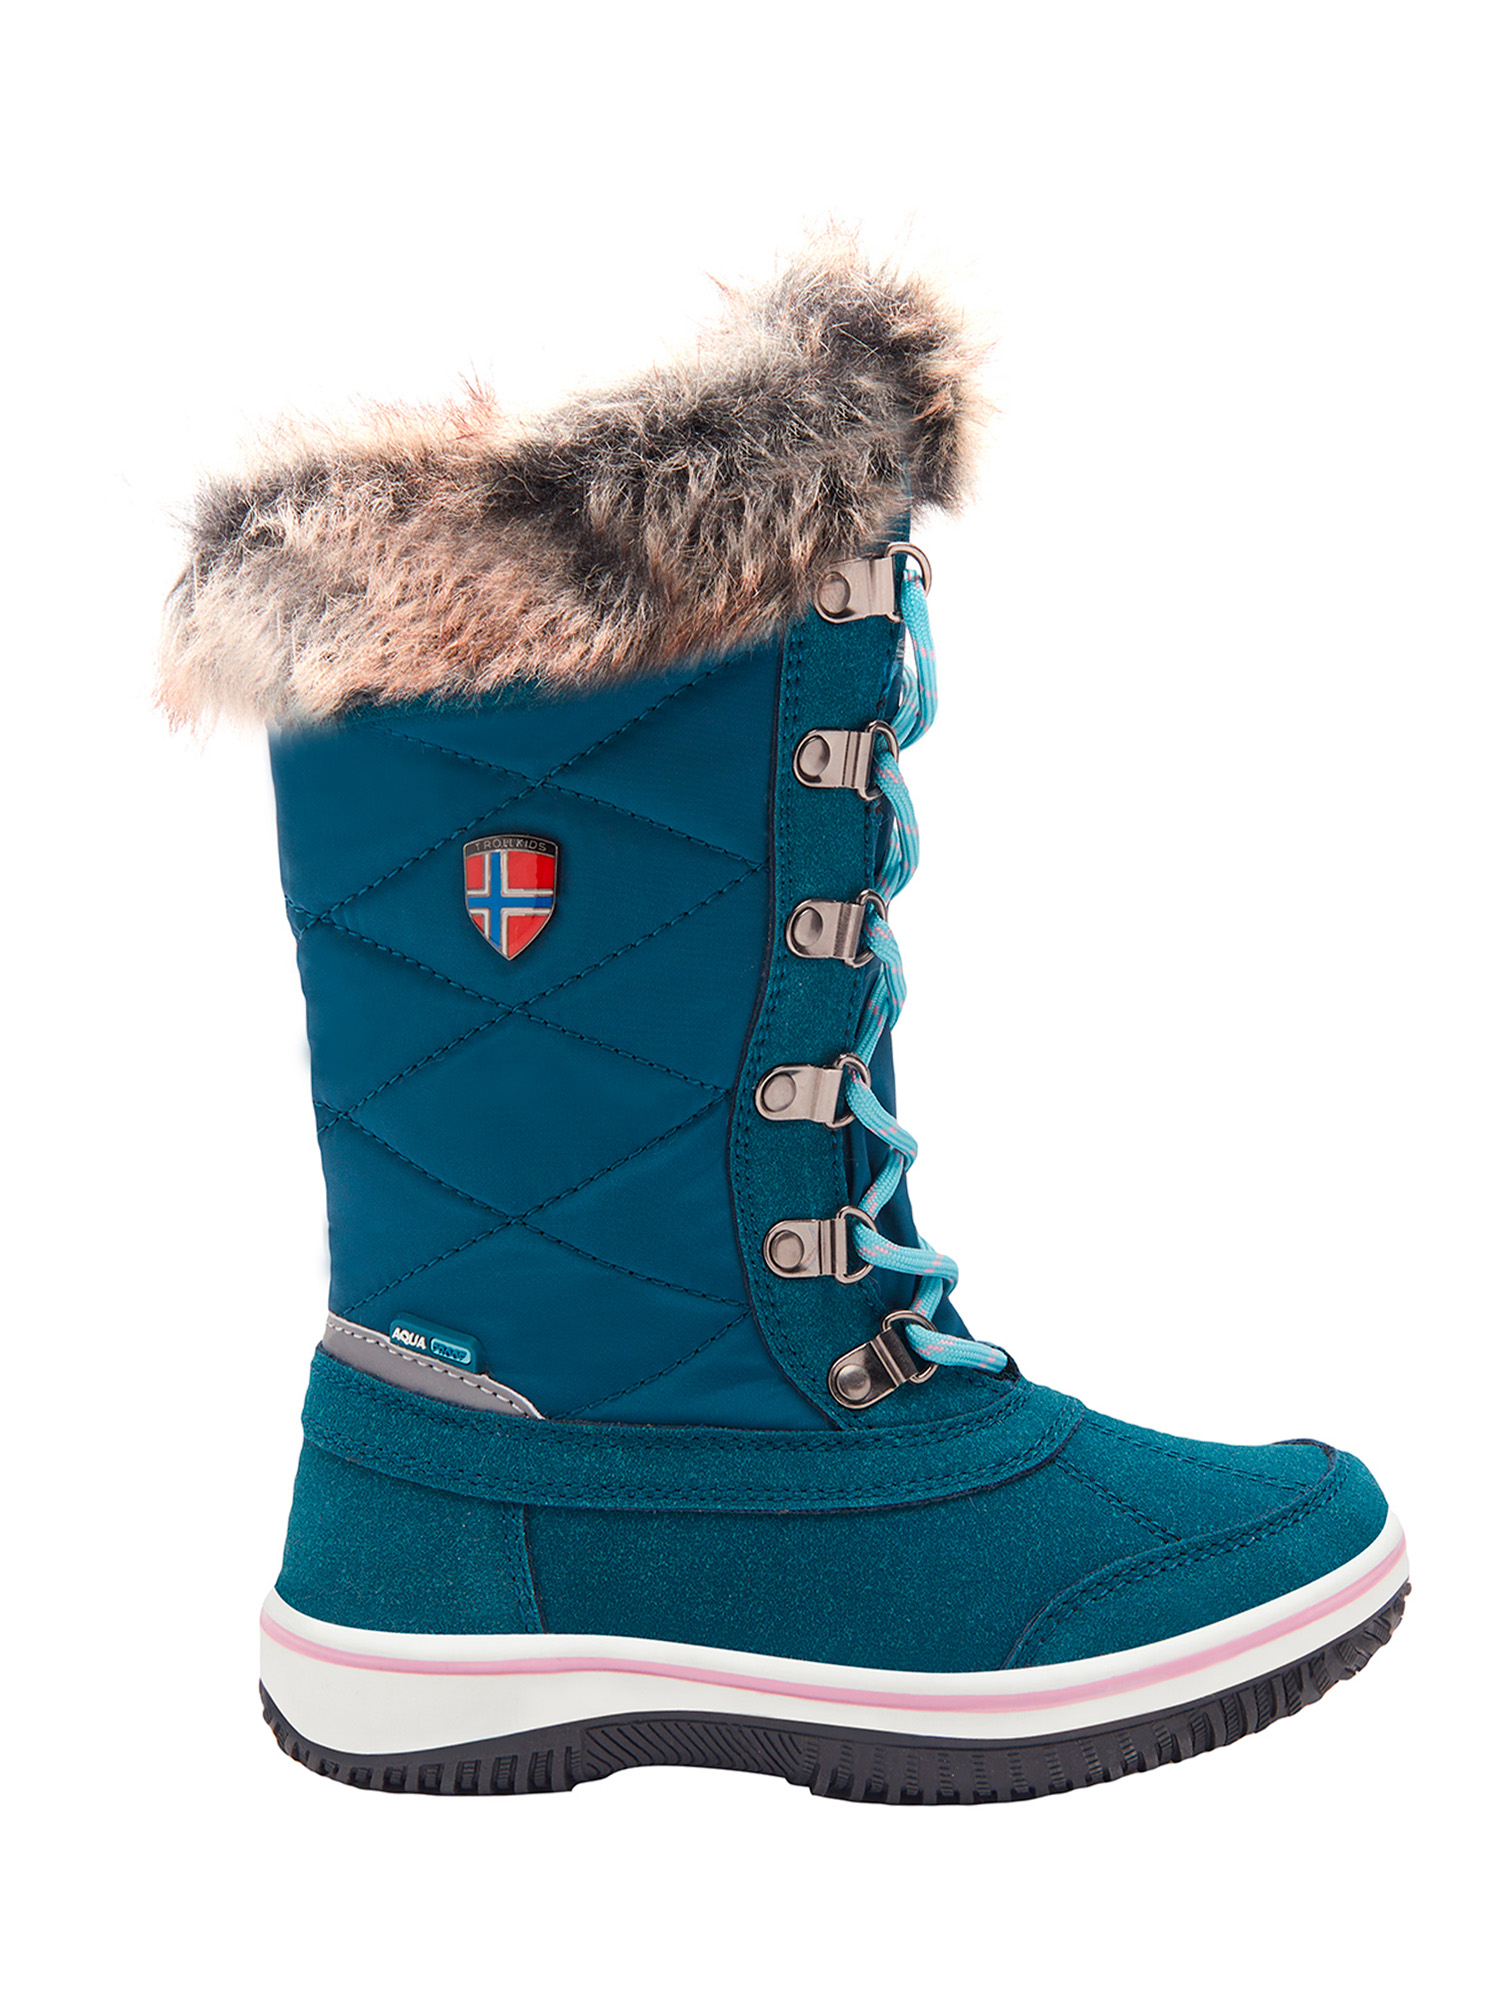 Ботинки Trollkids Girls Holmenkollen Snow Boots, голубой, 35